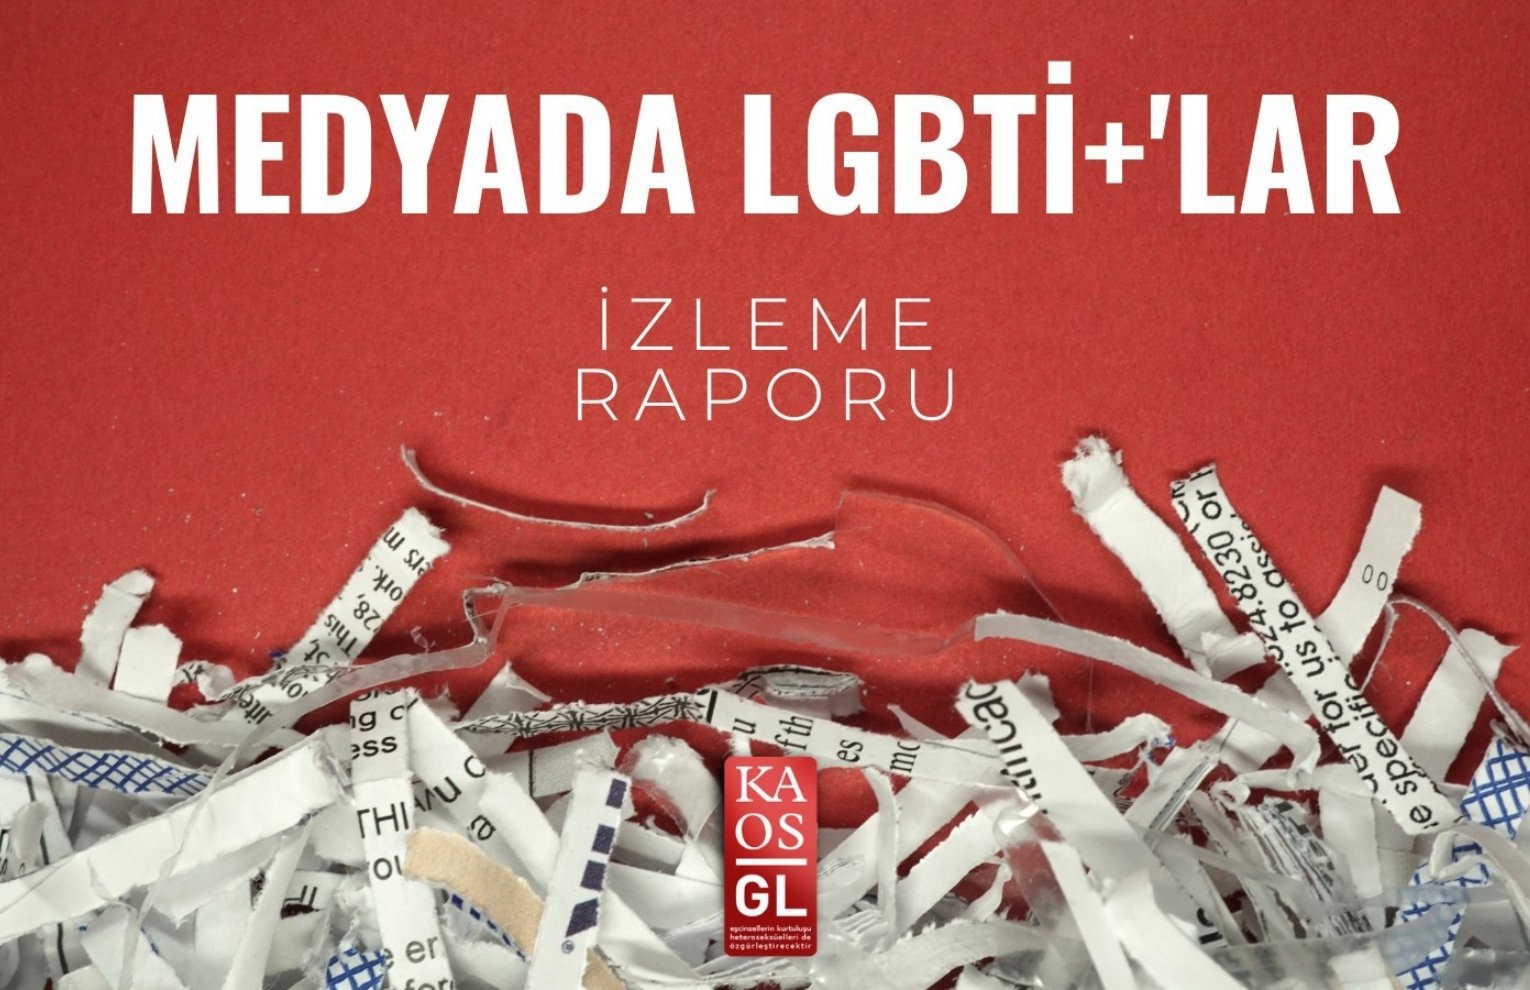 Medyada LGBTİ+'lar İzleme Raporu - Toplumsal Cinsiyet Odaklı Habercilik Kütüphanesi